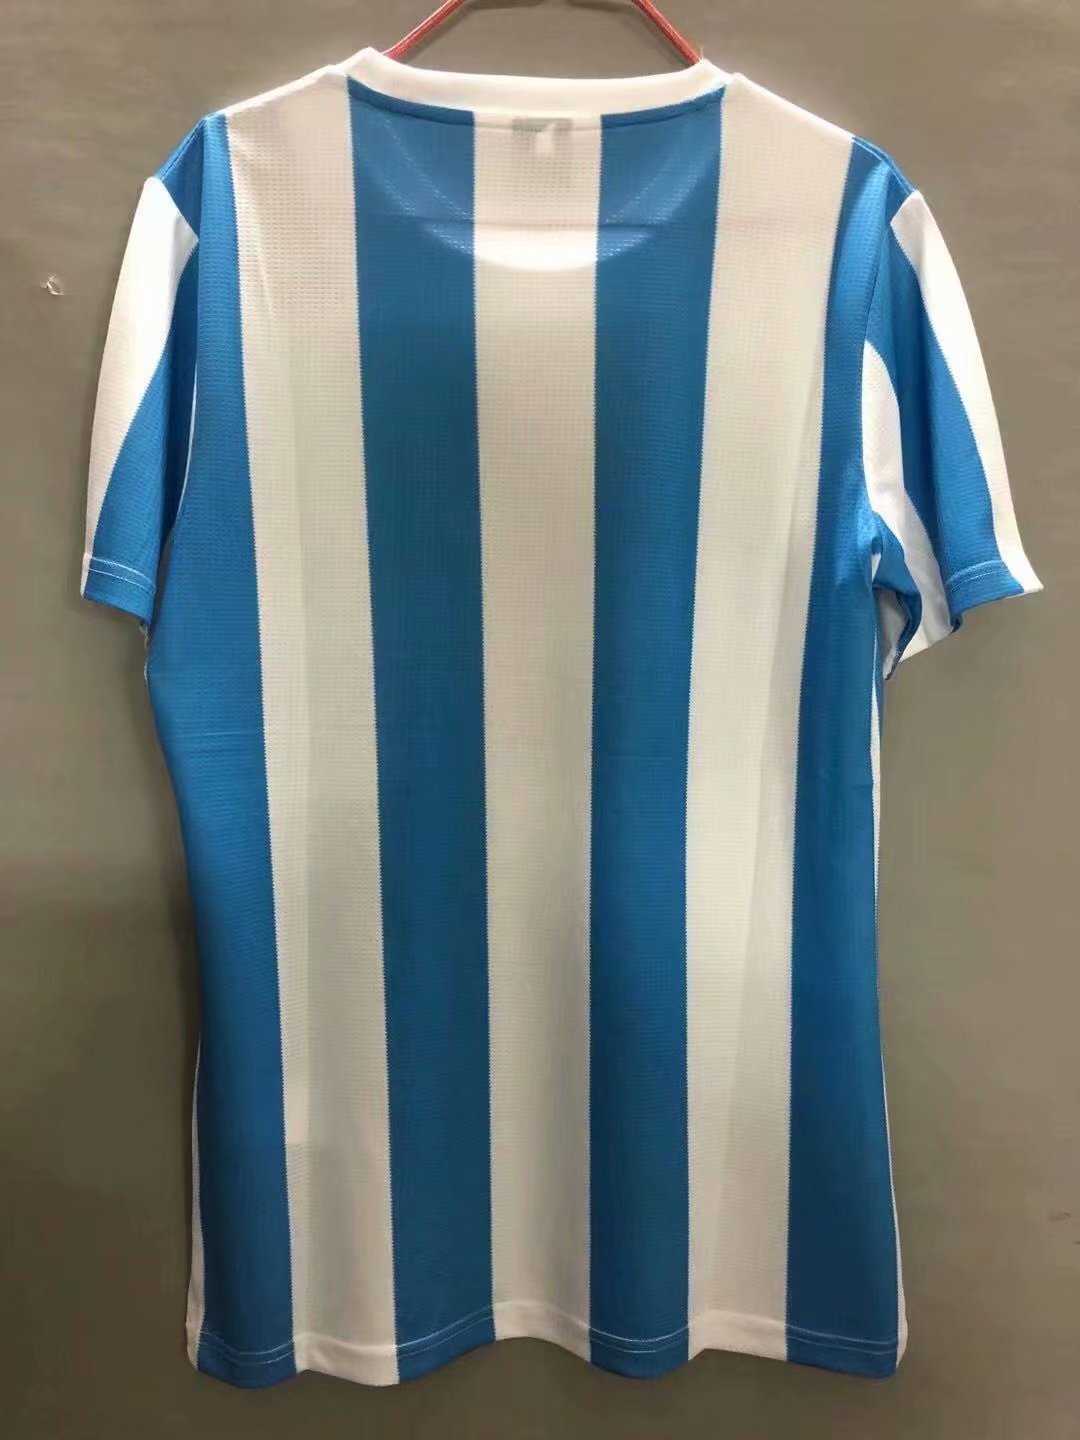 1986 Argentina Retro Home Mens Soccer Jersey Replica 